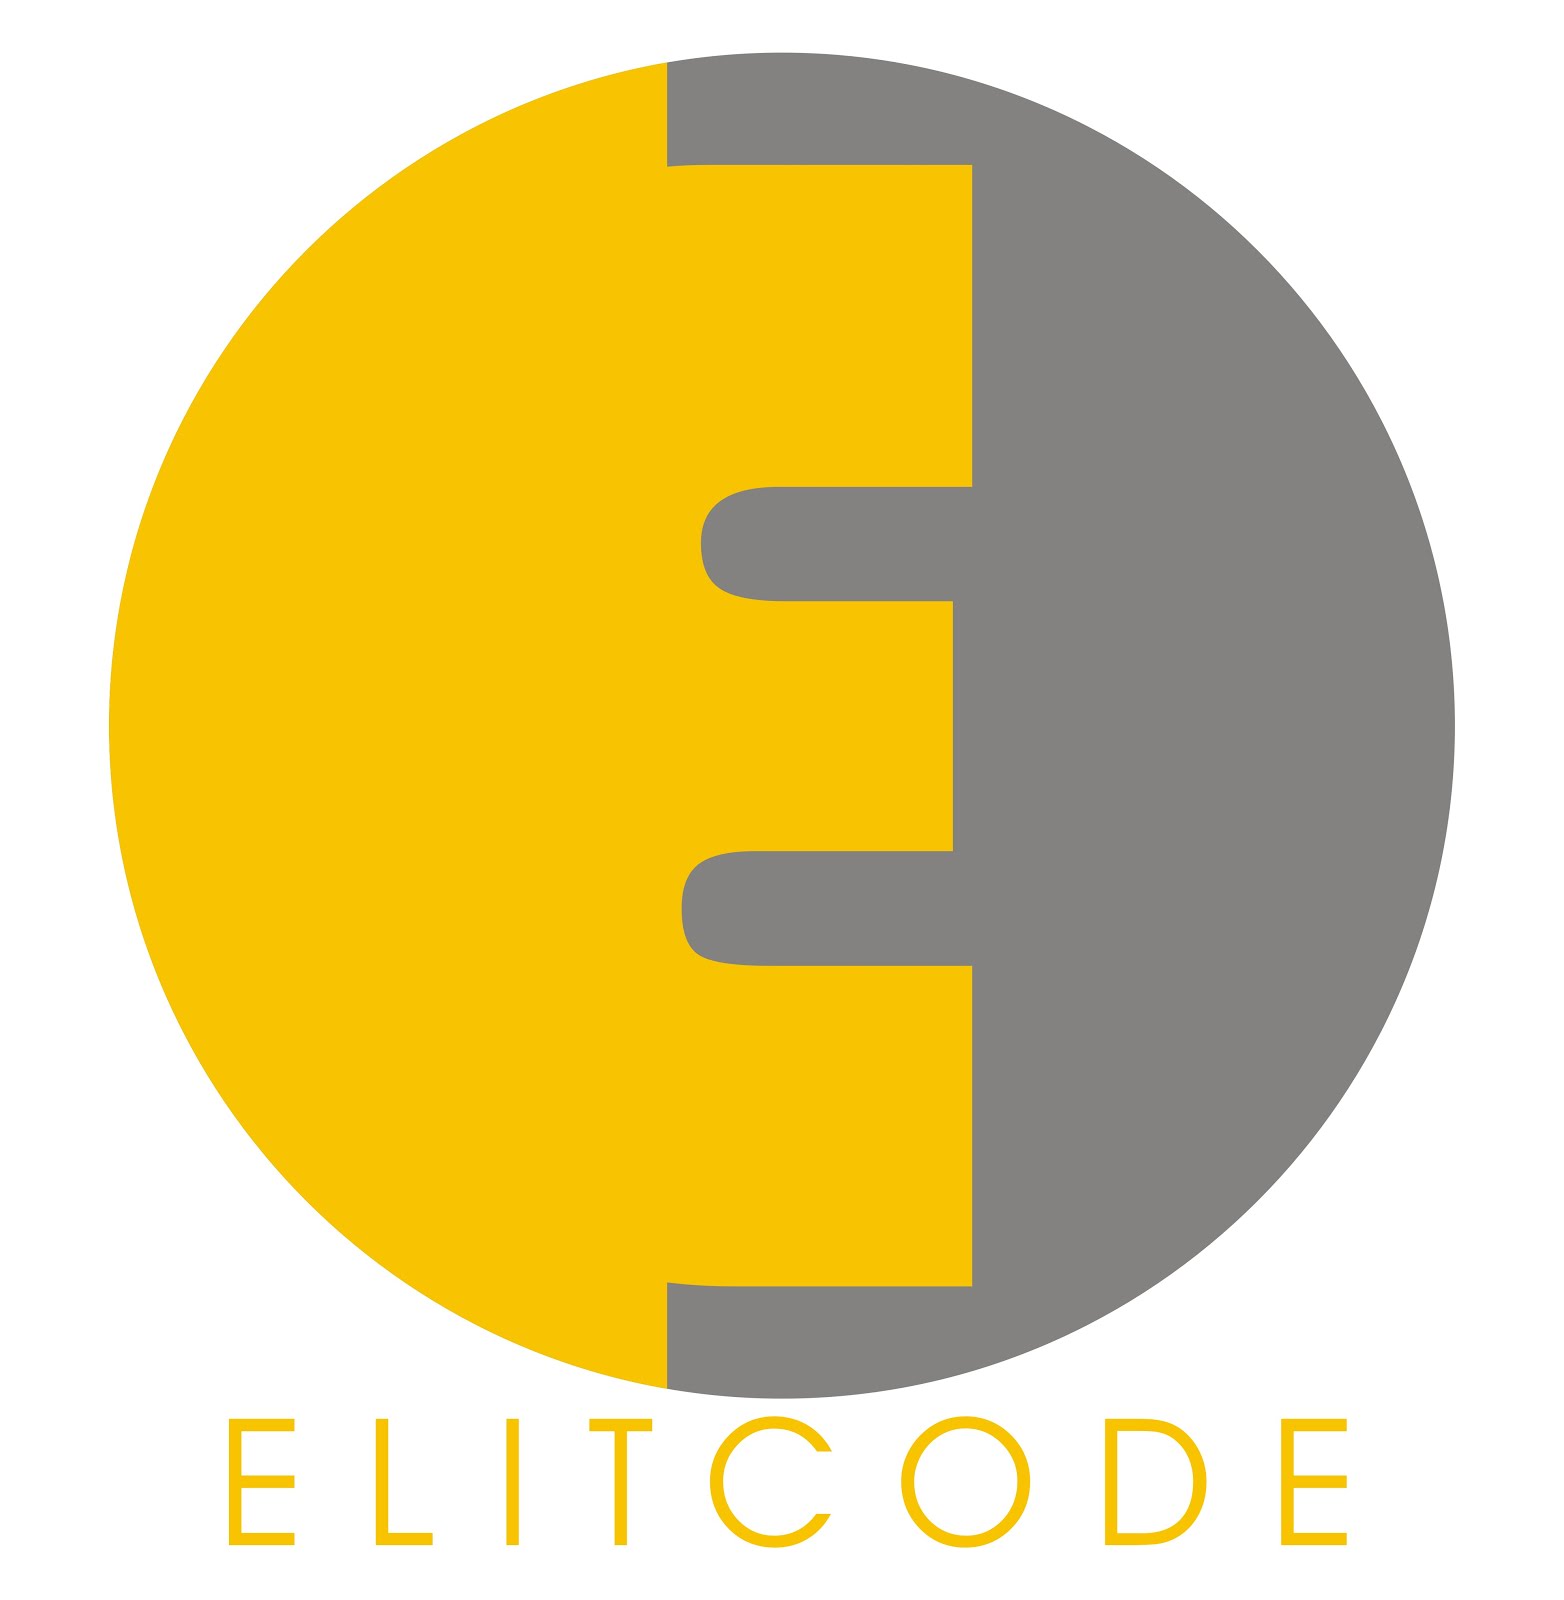 Elitcode - Learning Start Here